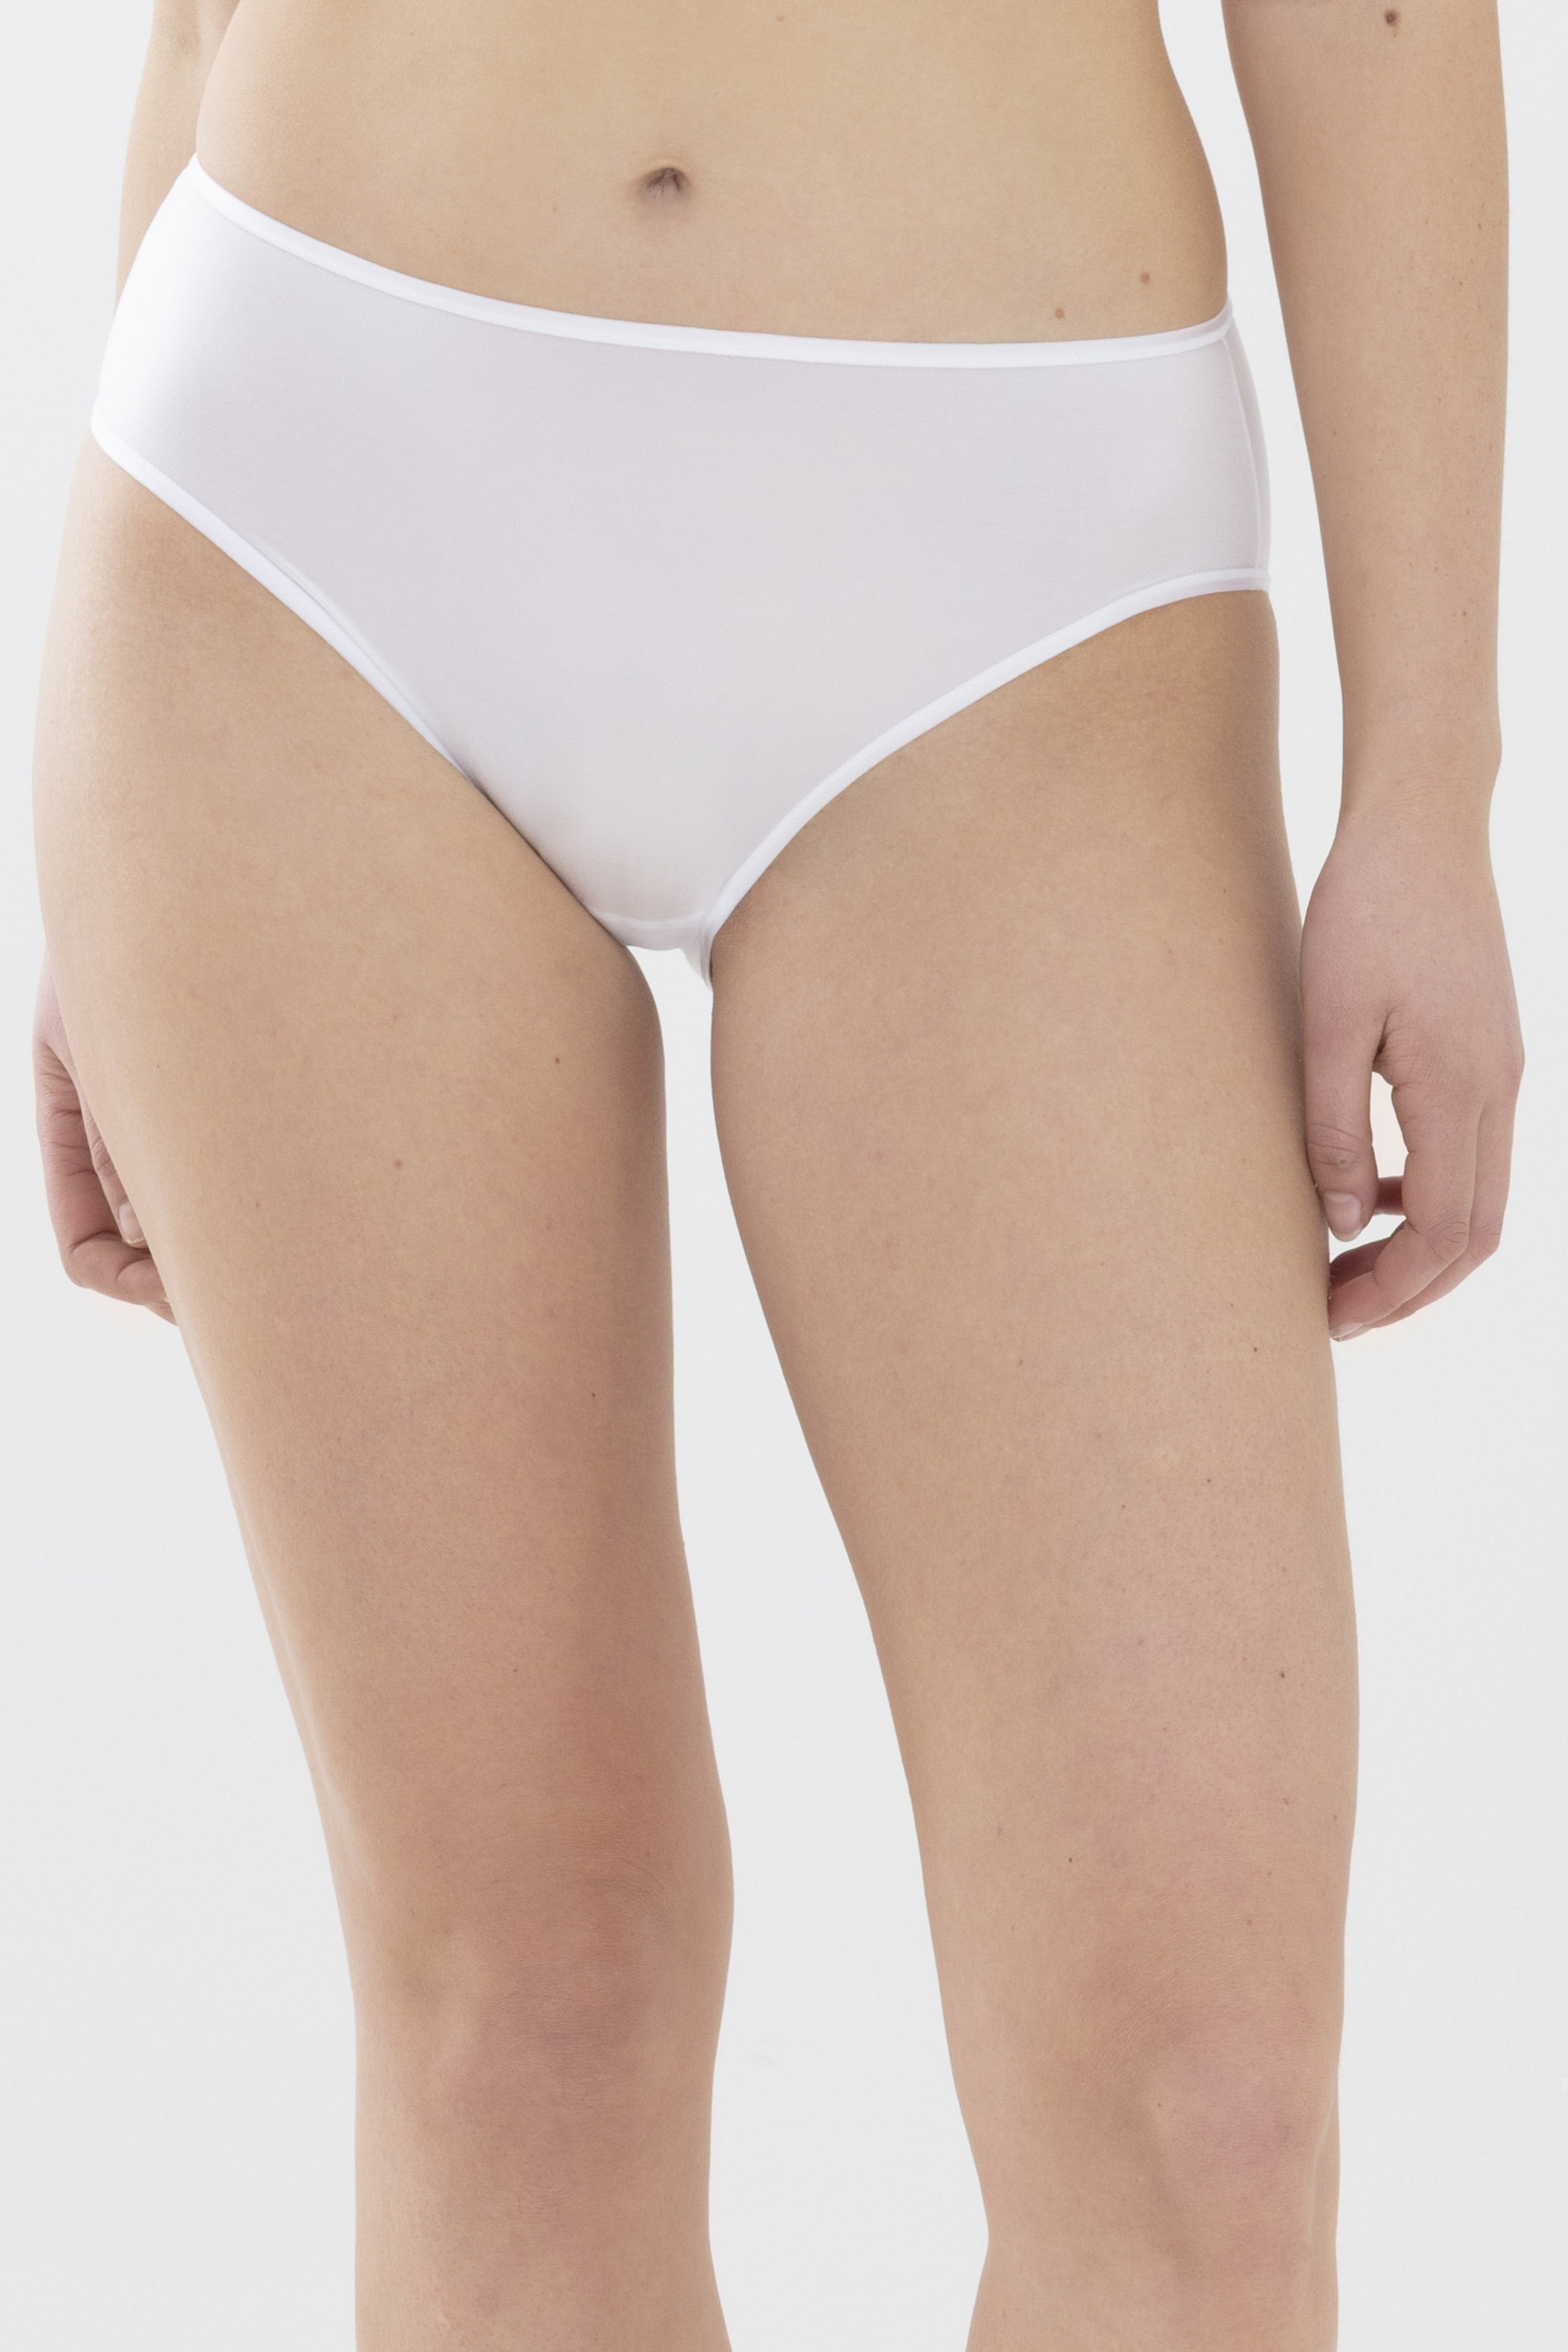 American-pants Wit Serie Joan Vooraanzicht | mey®